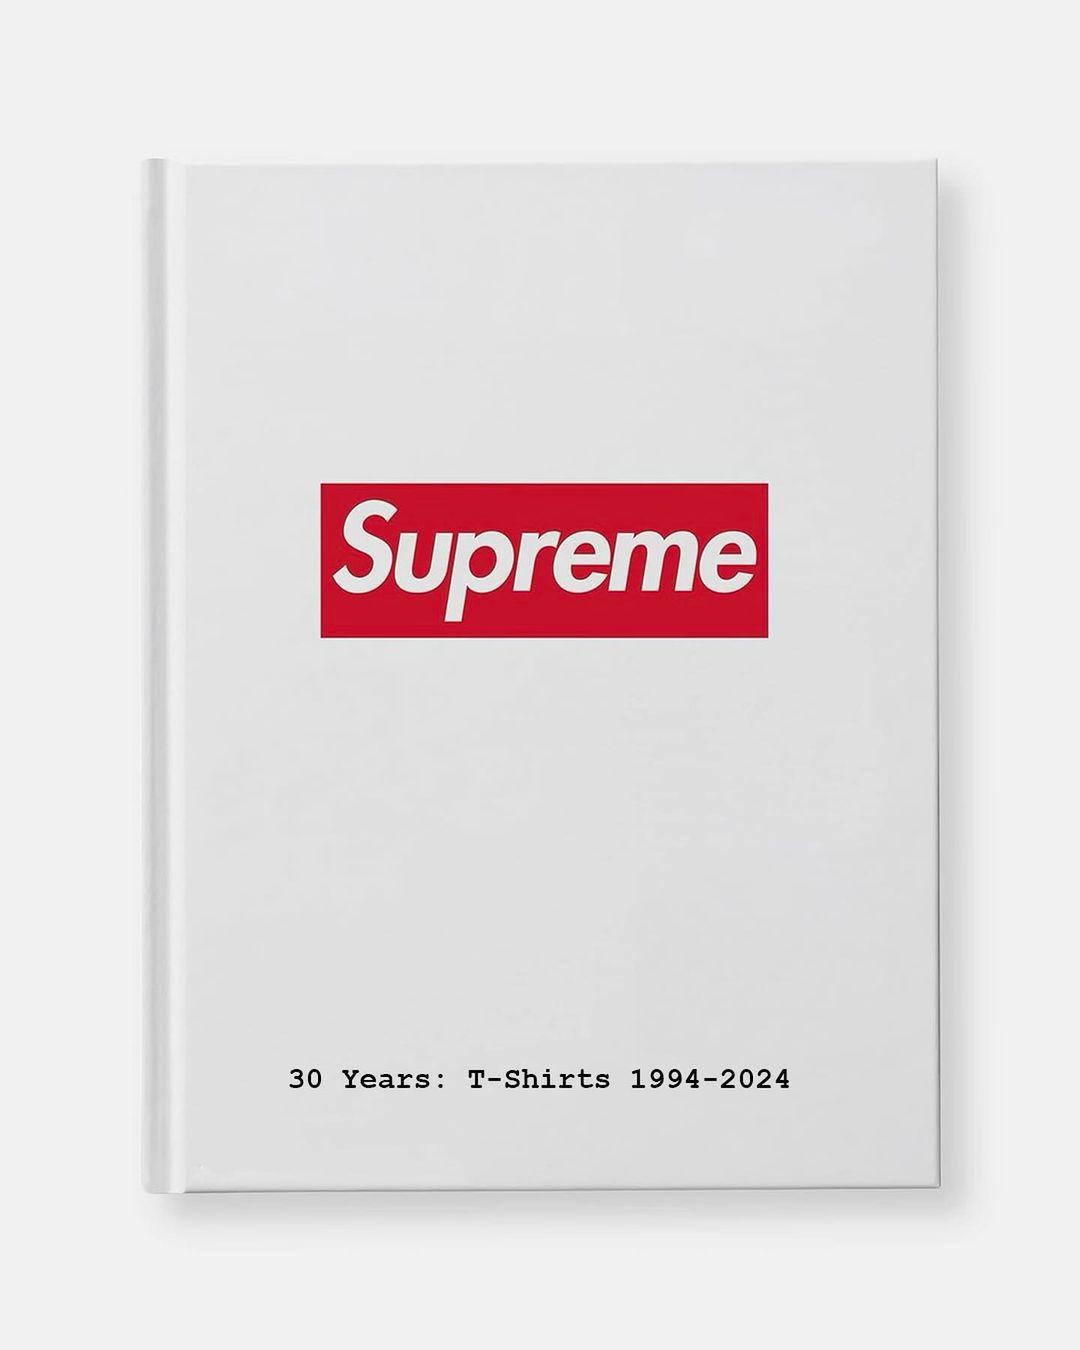 Supreme 30 Years boek